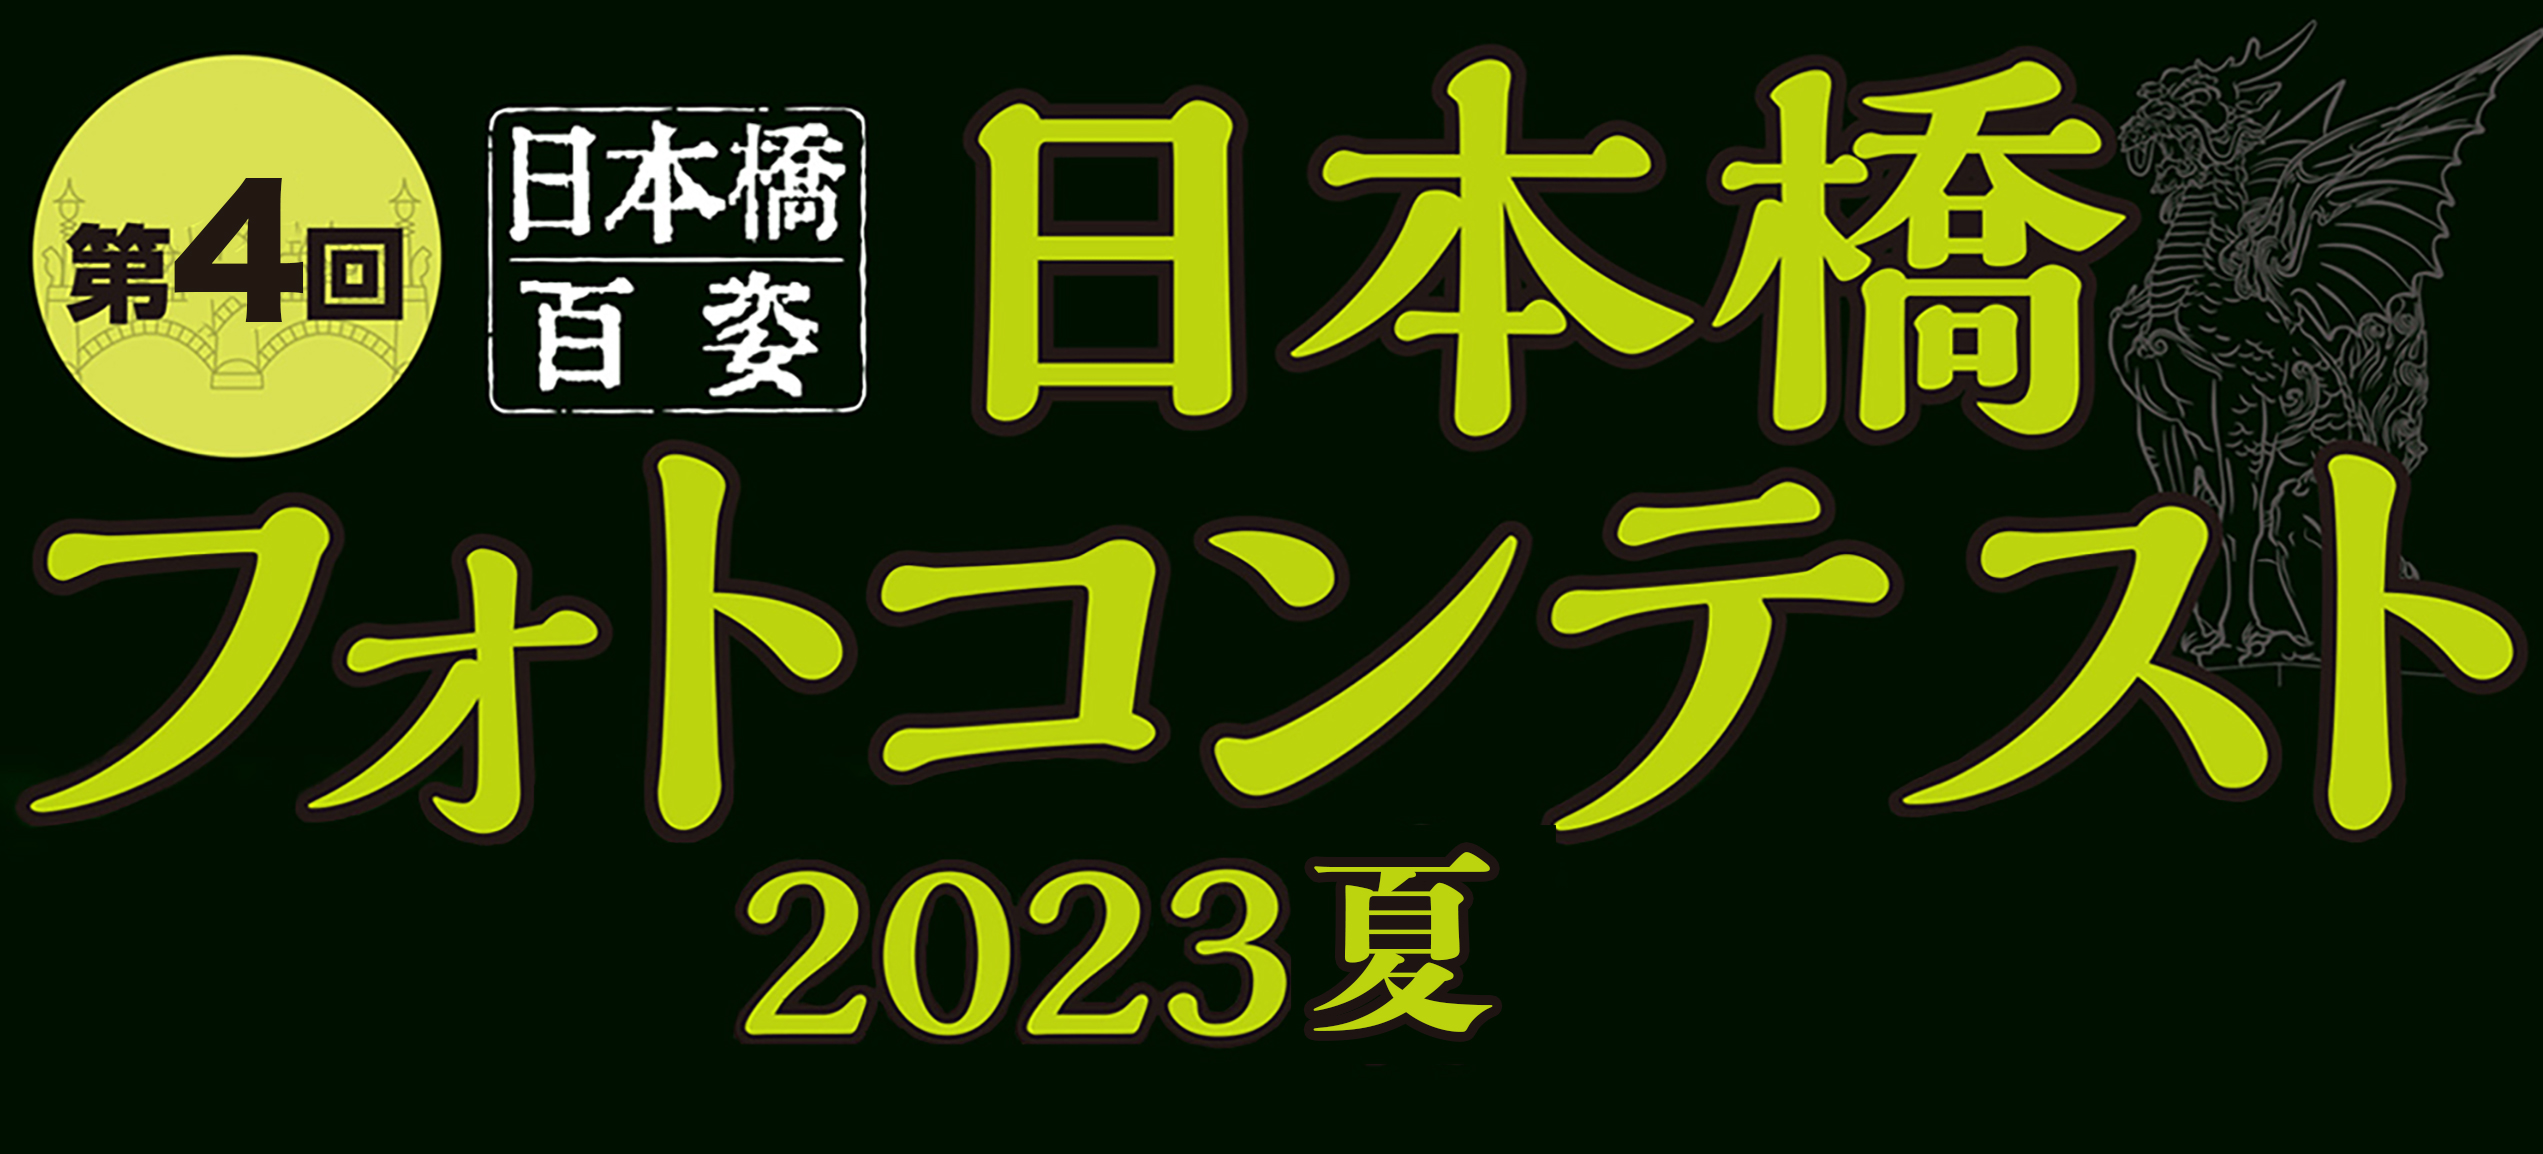 第2回 日本橋フォトコンテスト 2023冬